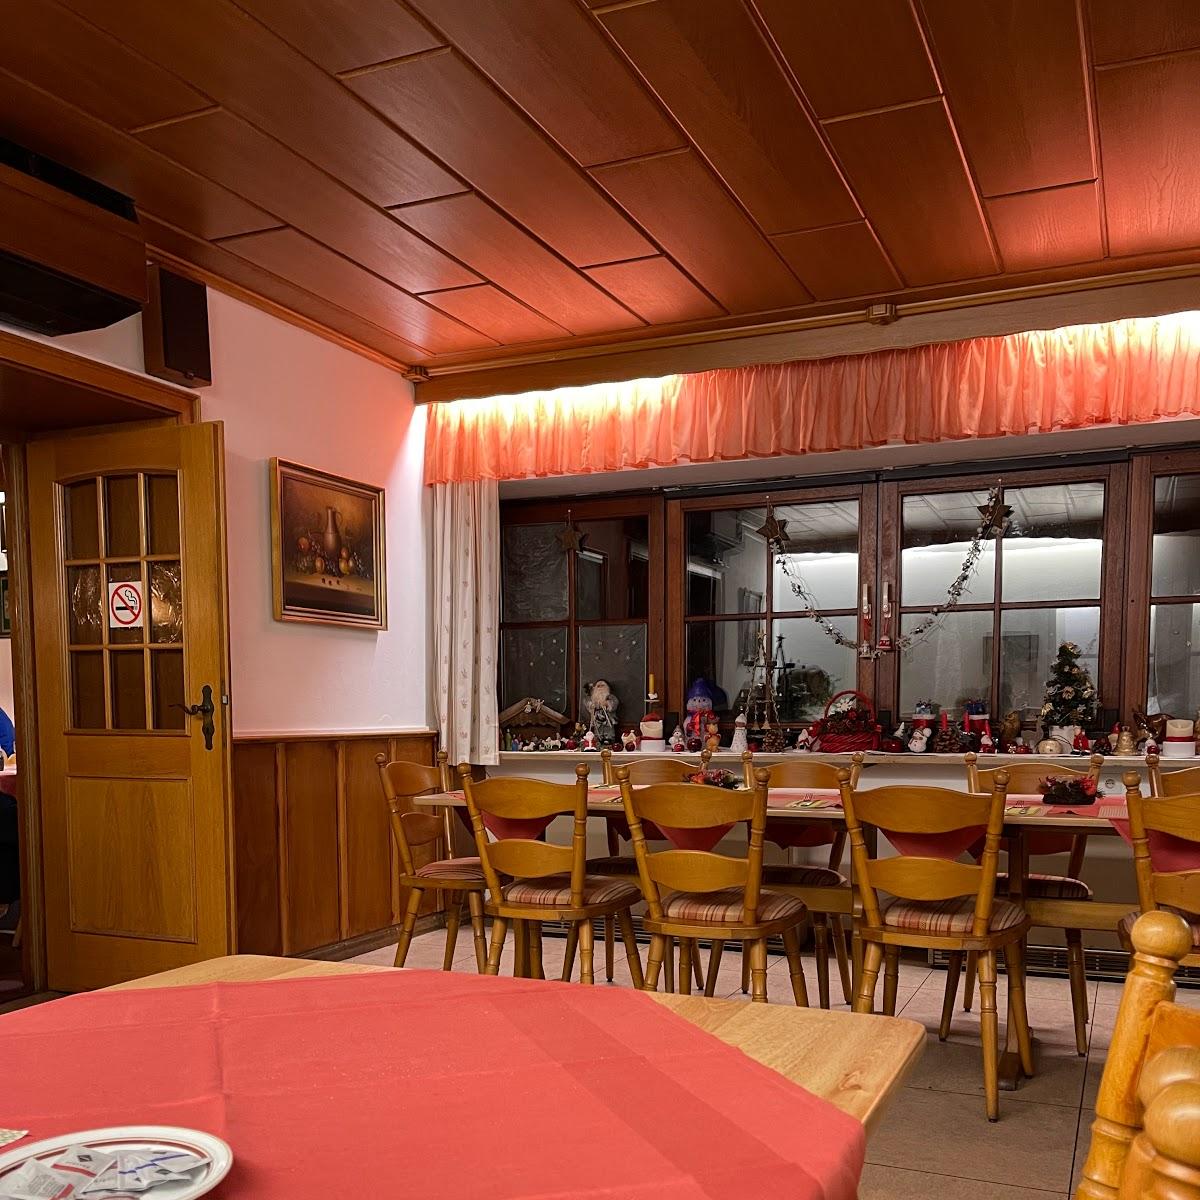 Restaurant "Speisegaststätte St. Florian" in Bruchsal